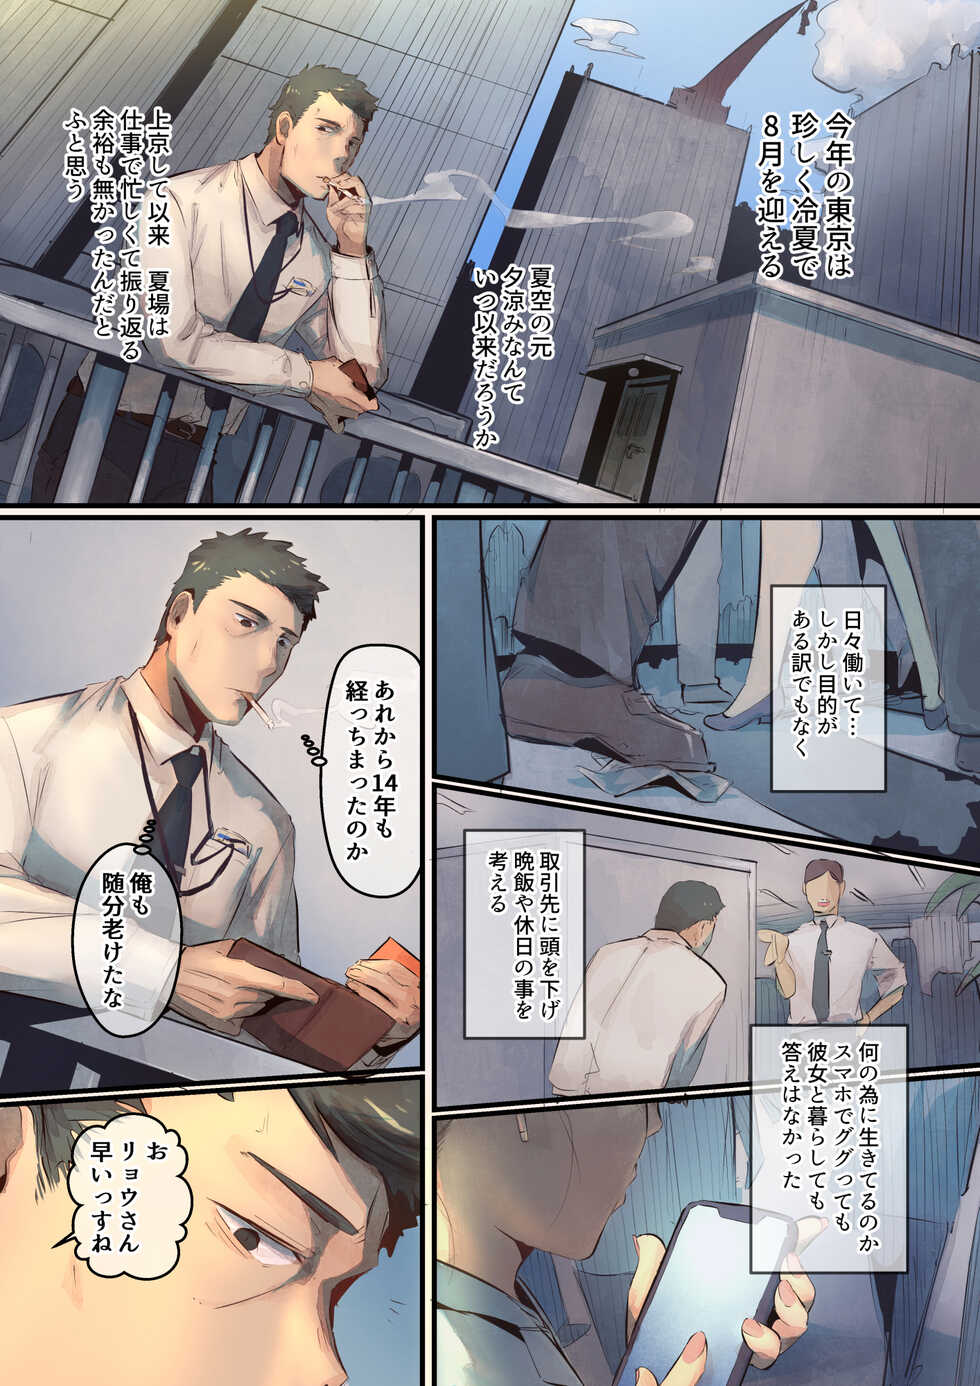 [prhs] Ano Natsu no Kagerou 1 - Page 3